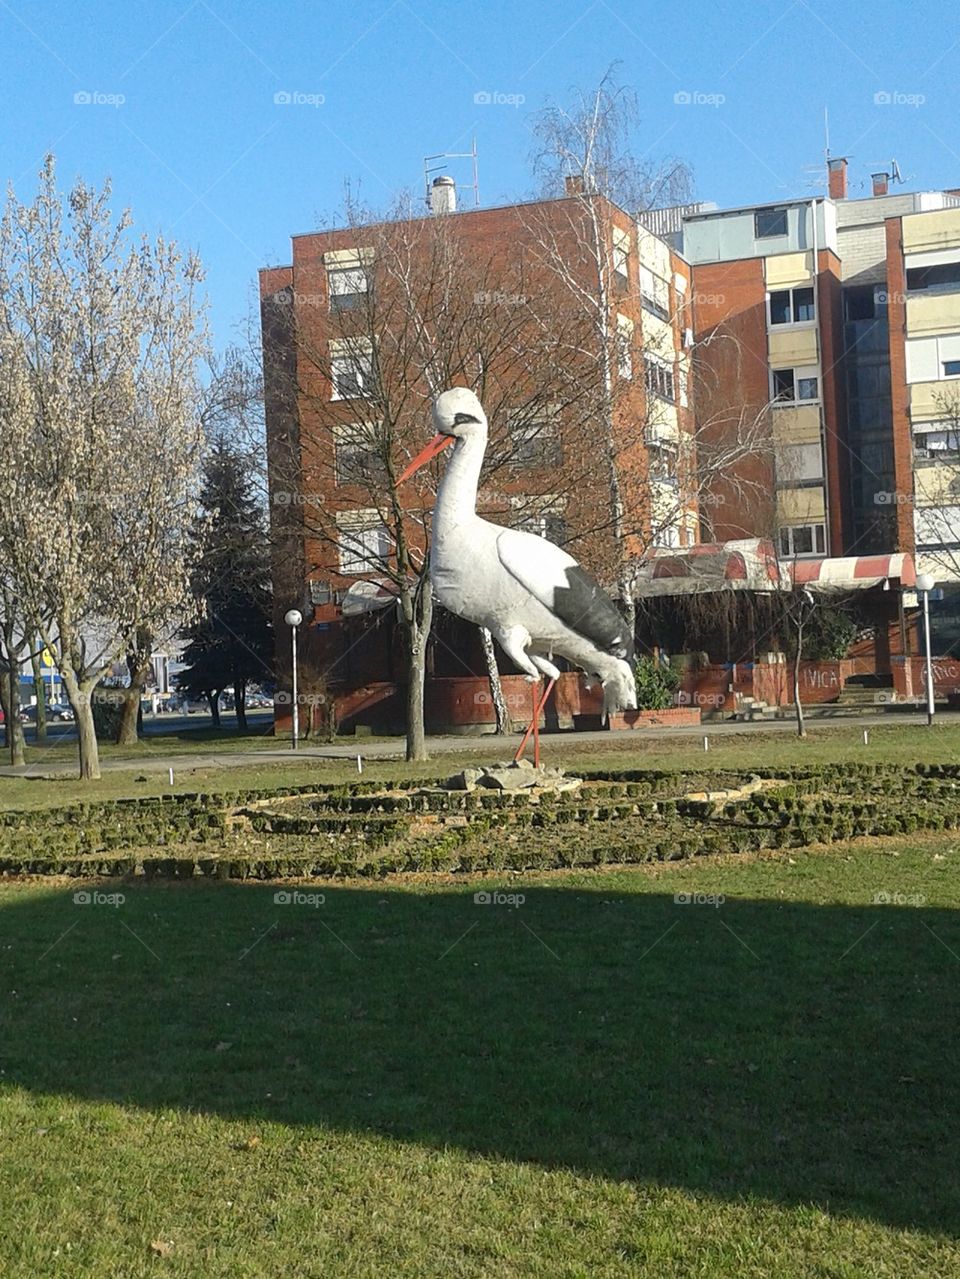 giant stork